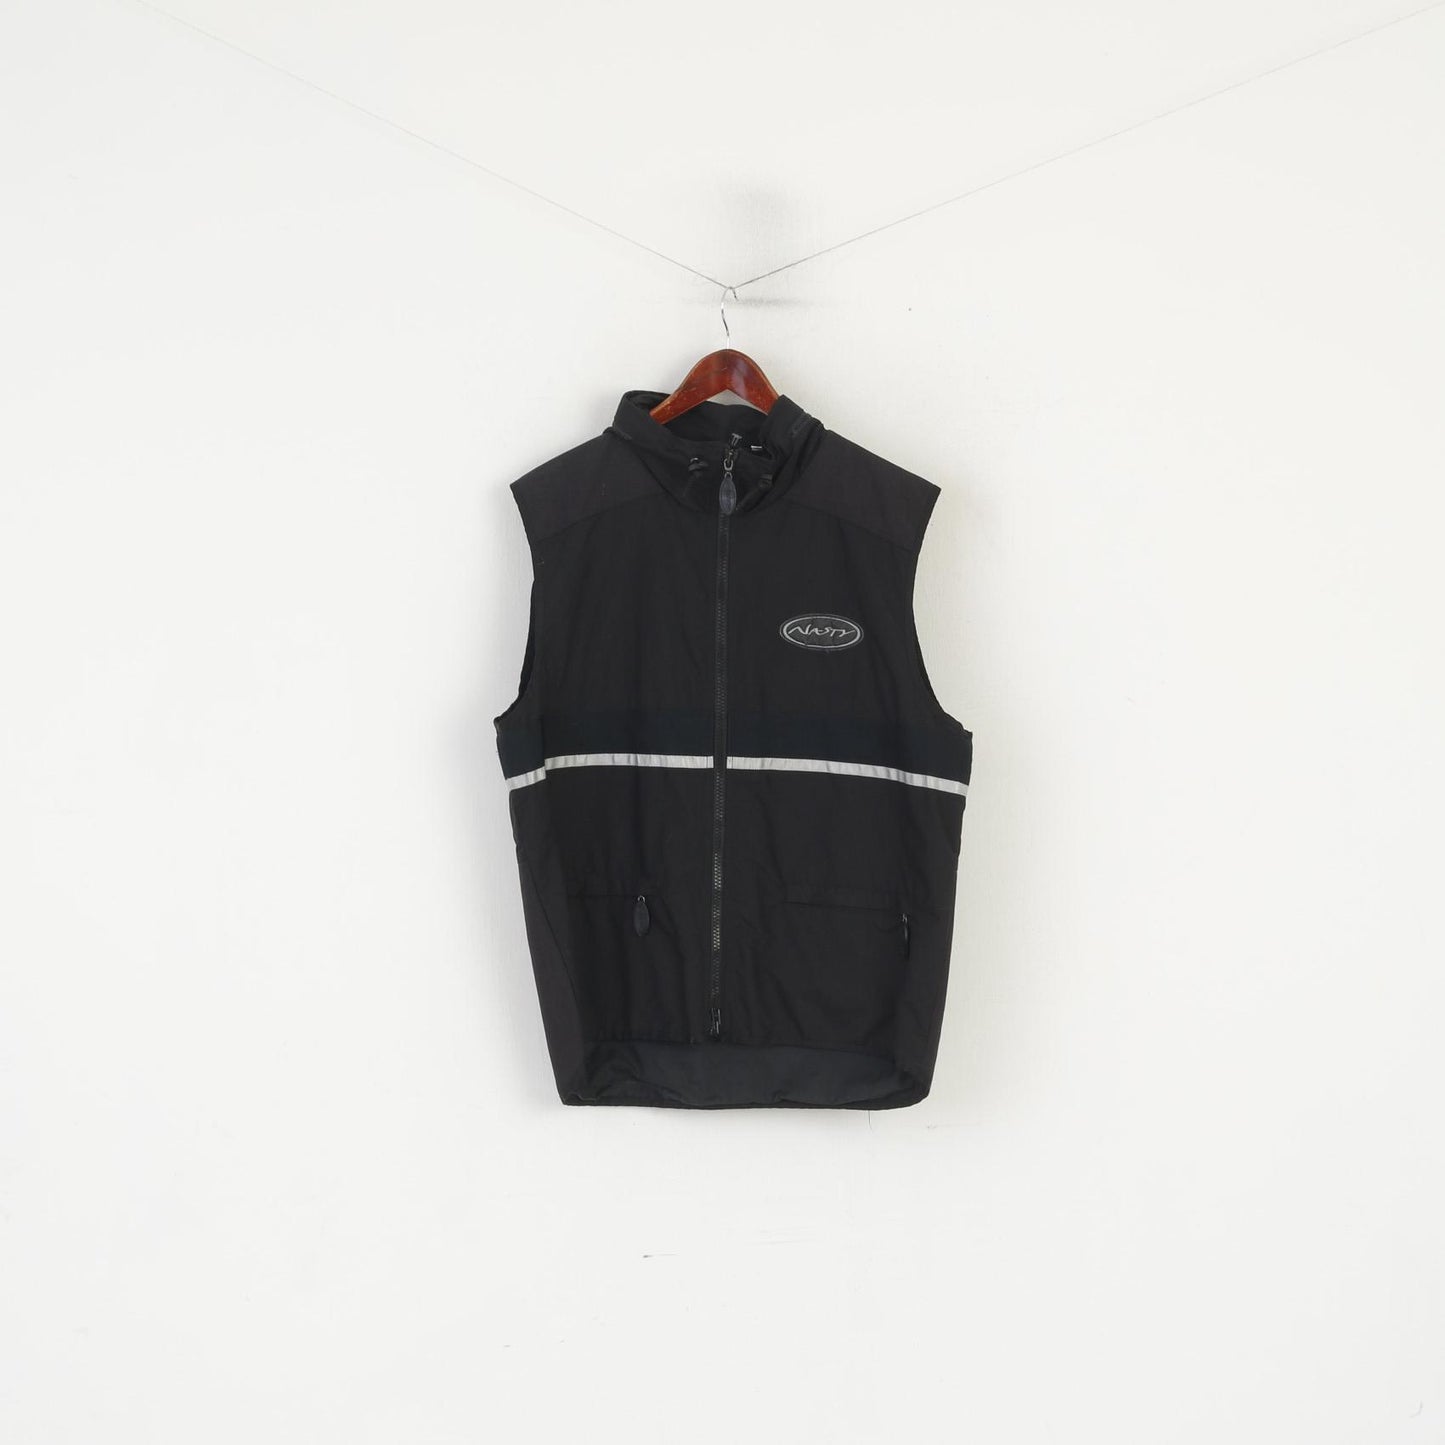 Nasty Men M Waistcoat Black Hooded Sportswear Reflective Full Zip Vest